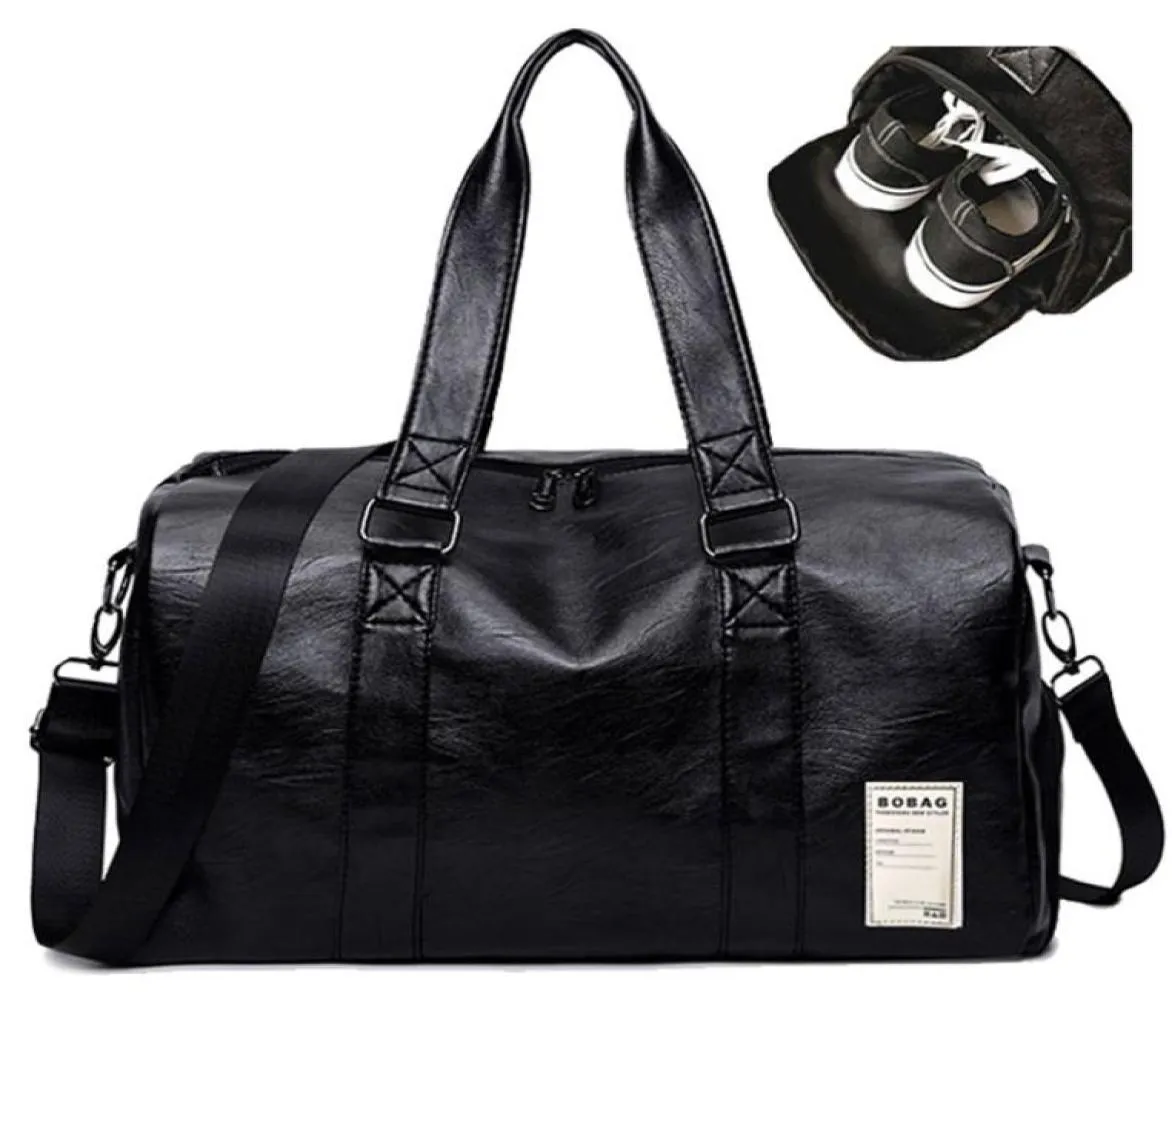 PU LÄDER Gym Male Bag Top Female Sport Shoe Bag For Women Fitness Over The Shoulder Yoga Bag Travel Handbags Black Red6806482